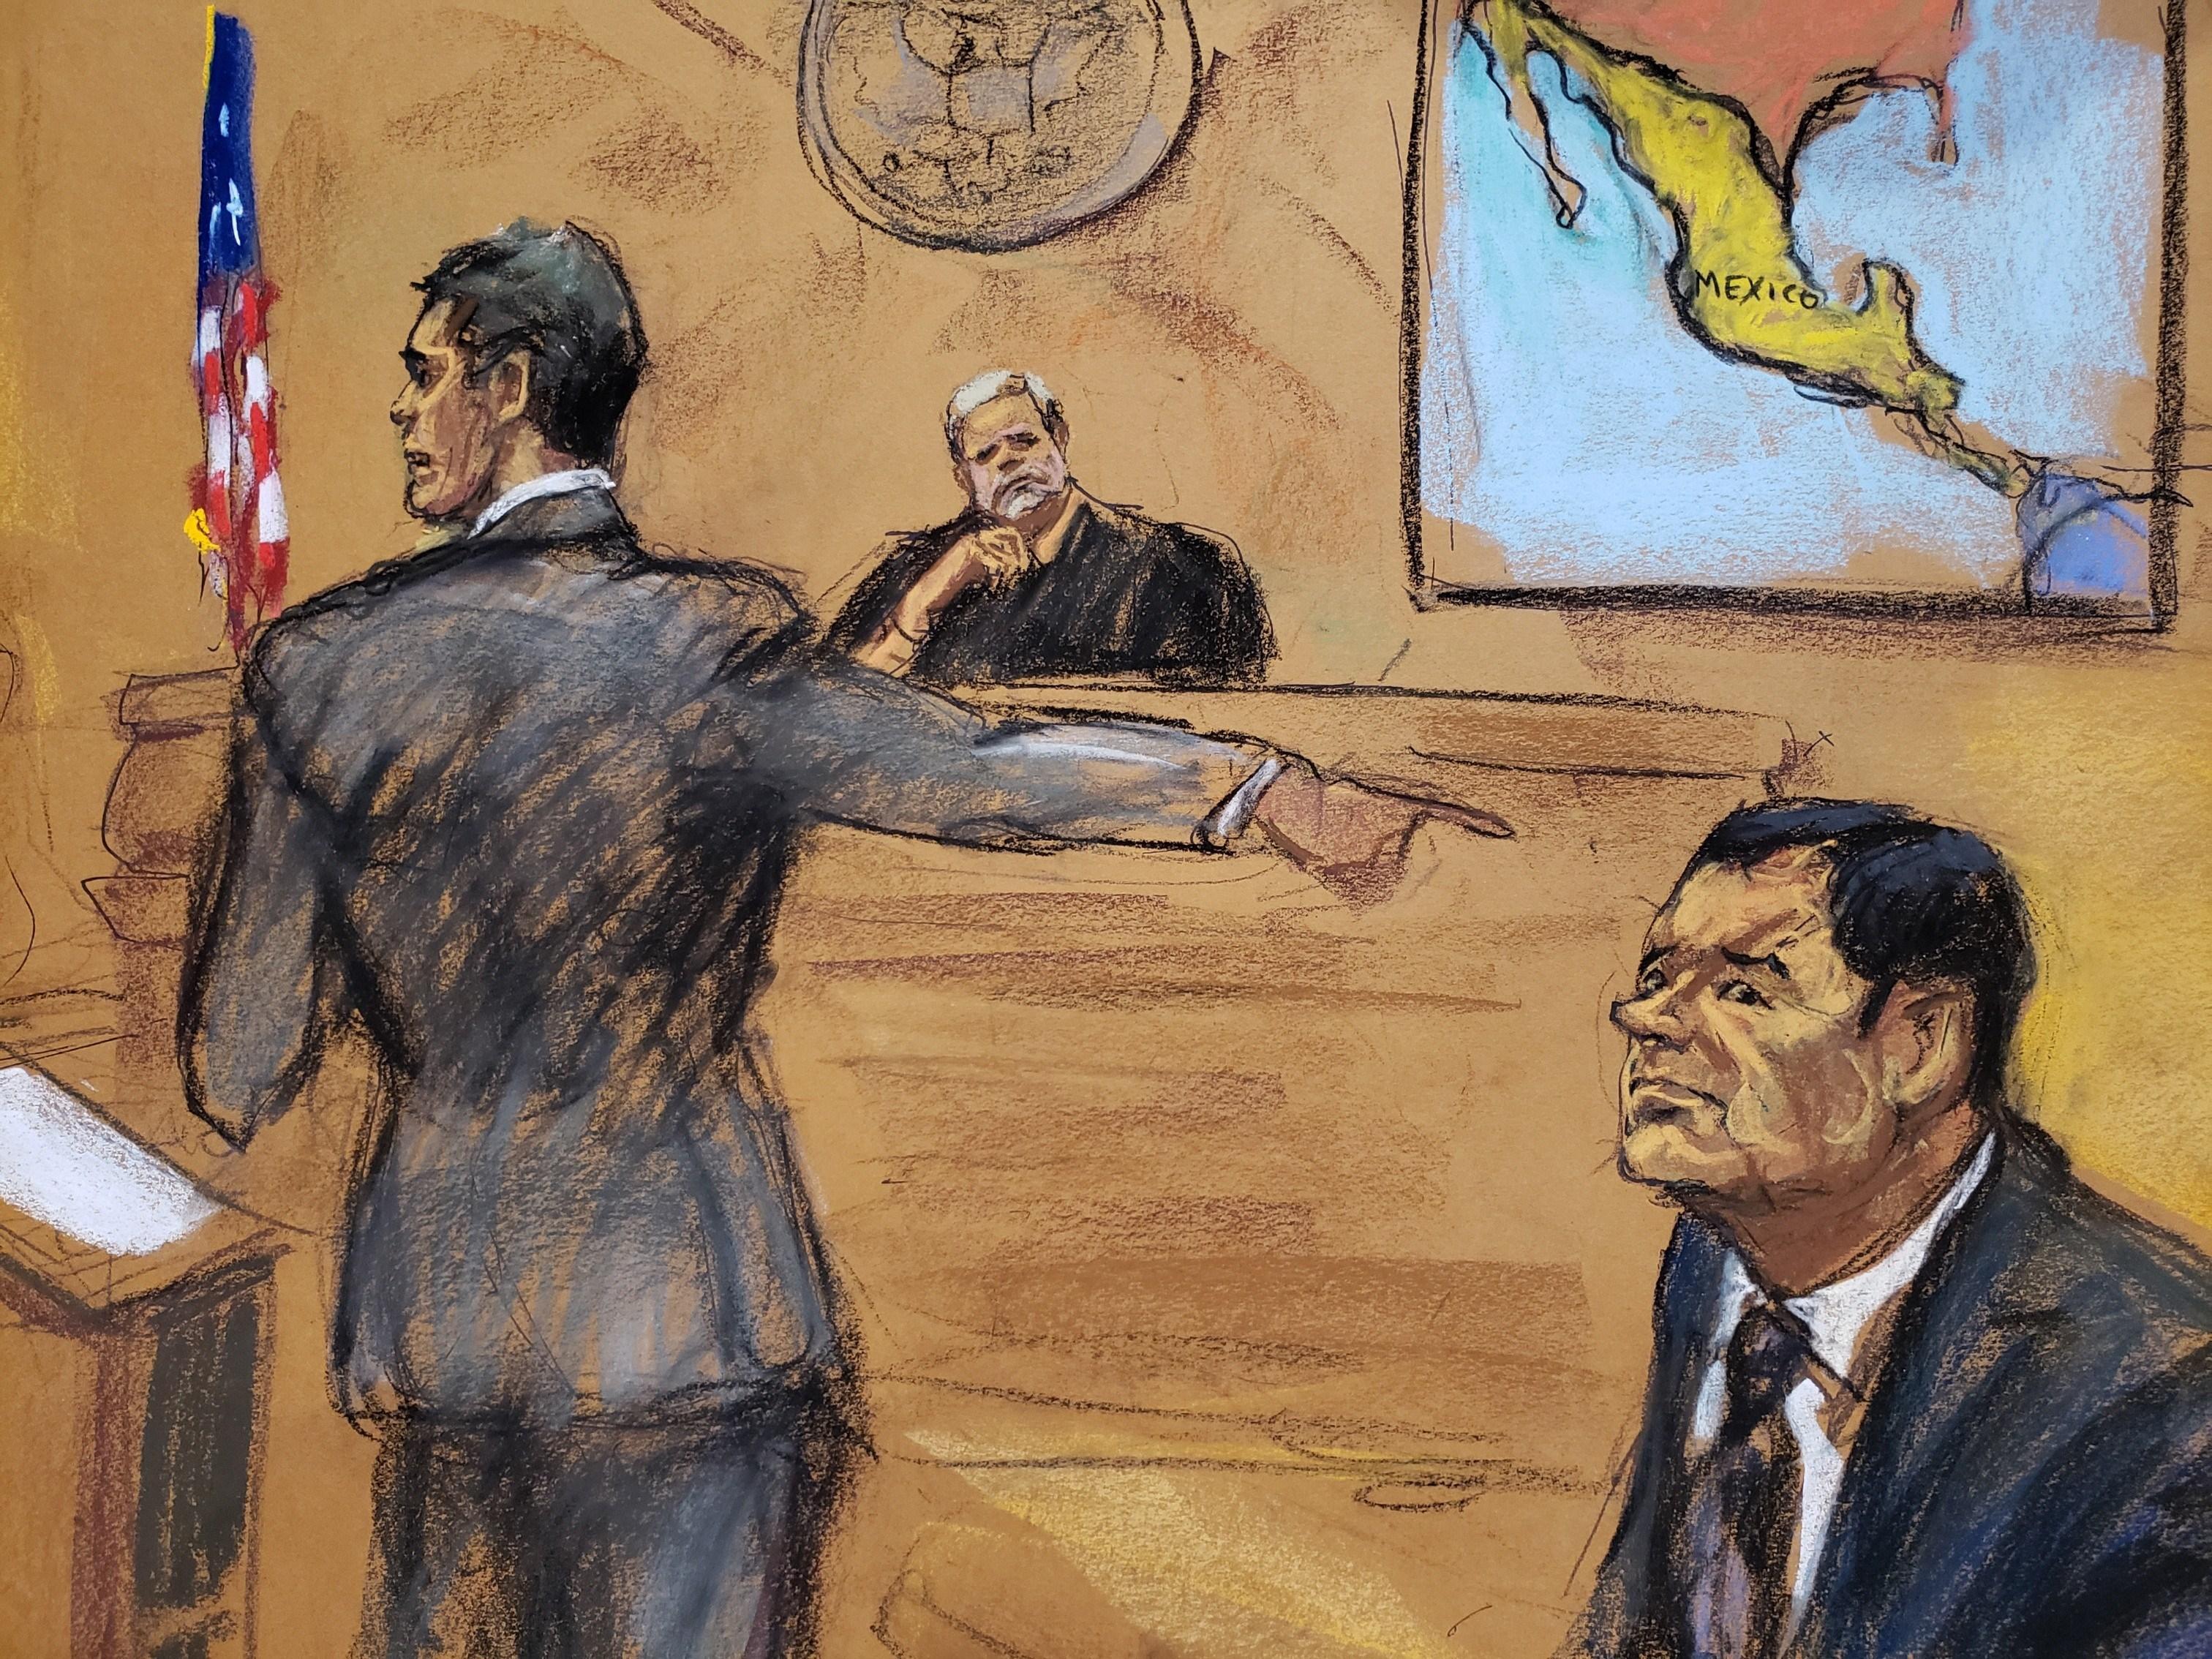 Juez recrimina a abogado de "El Chapo" acusaciones contra presidentes